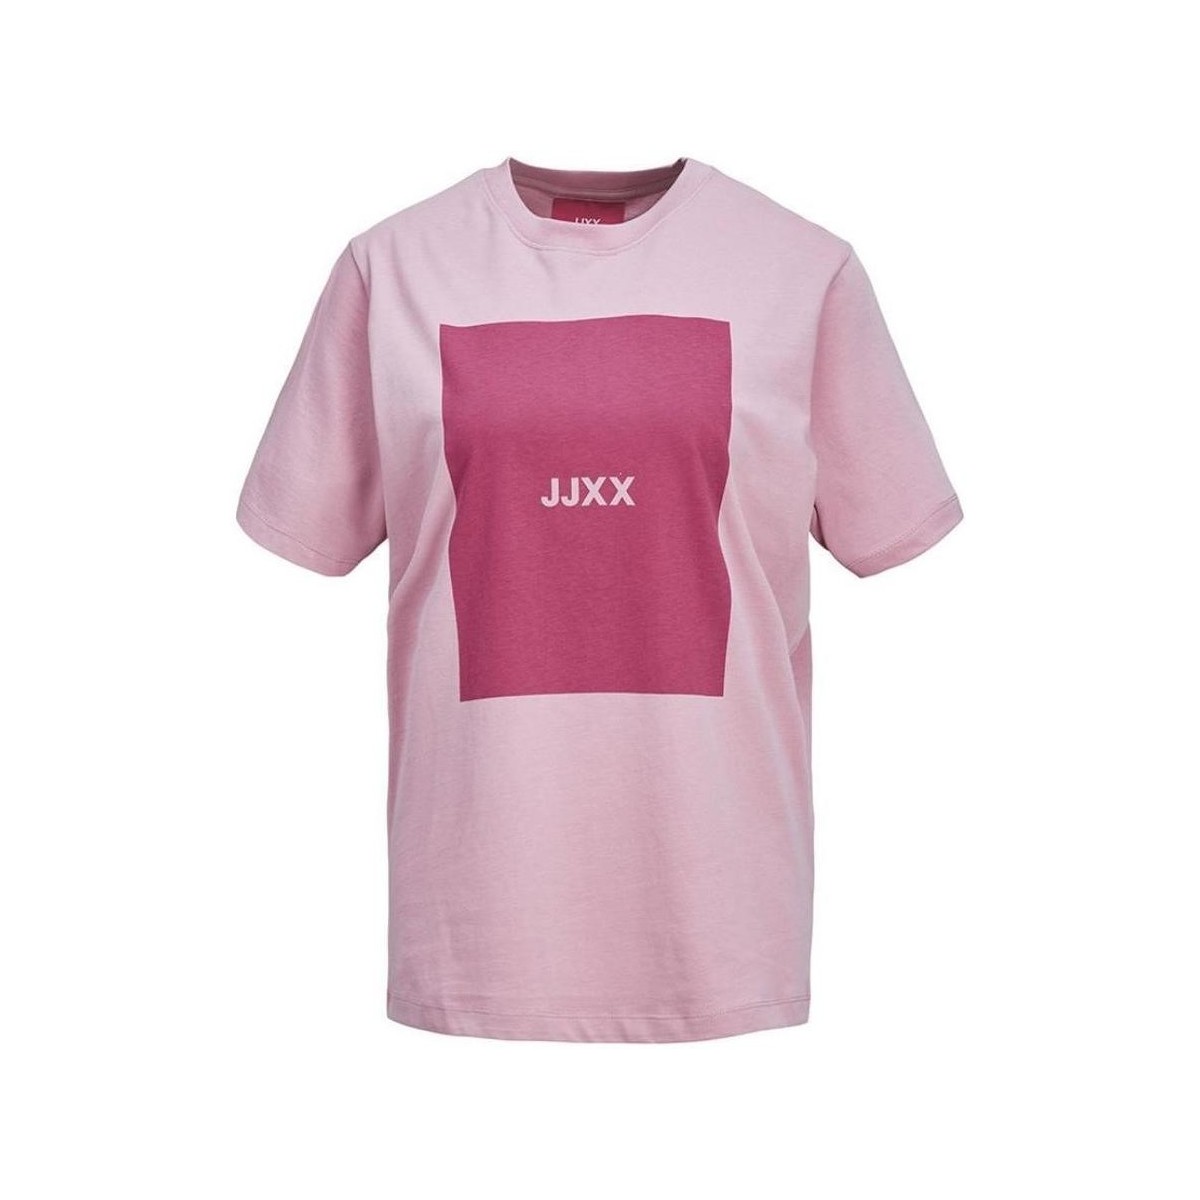 Textil Mulher T-Shirt mangas curtas Jjxx  Rosa